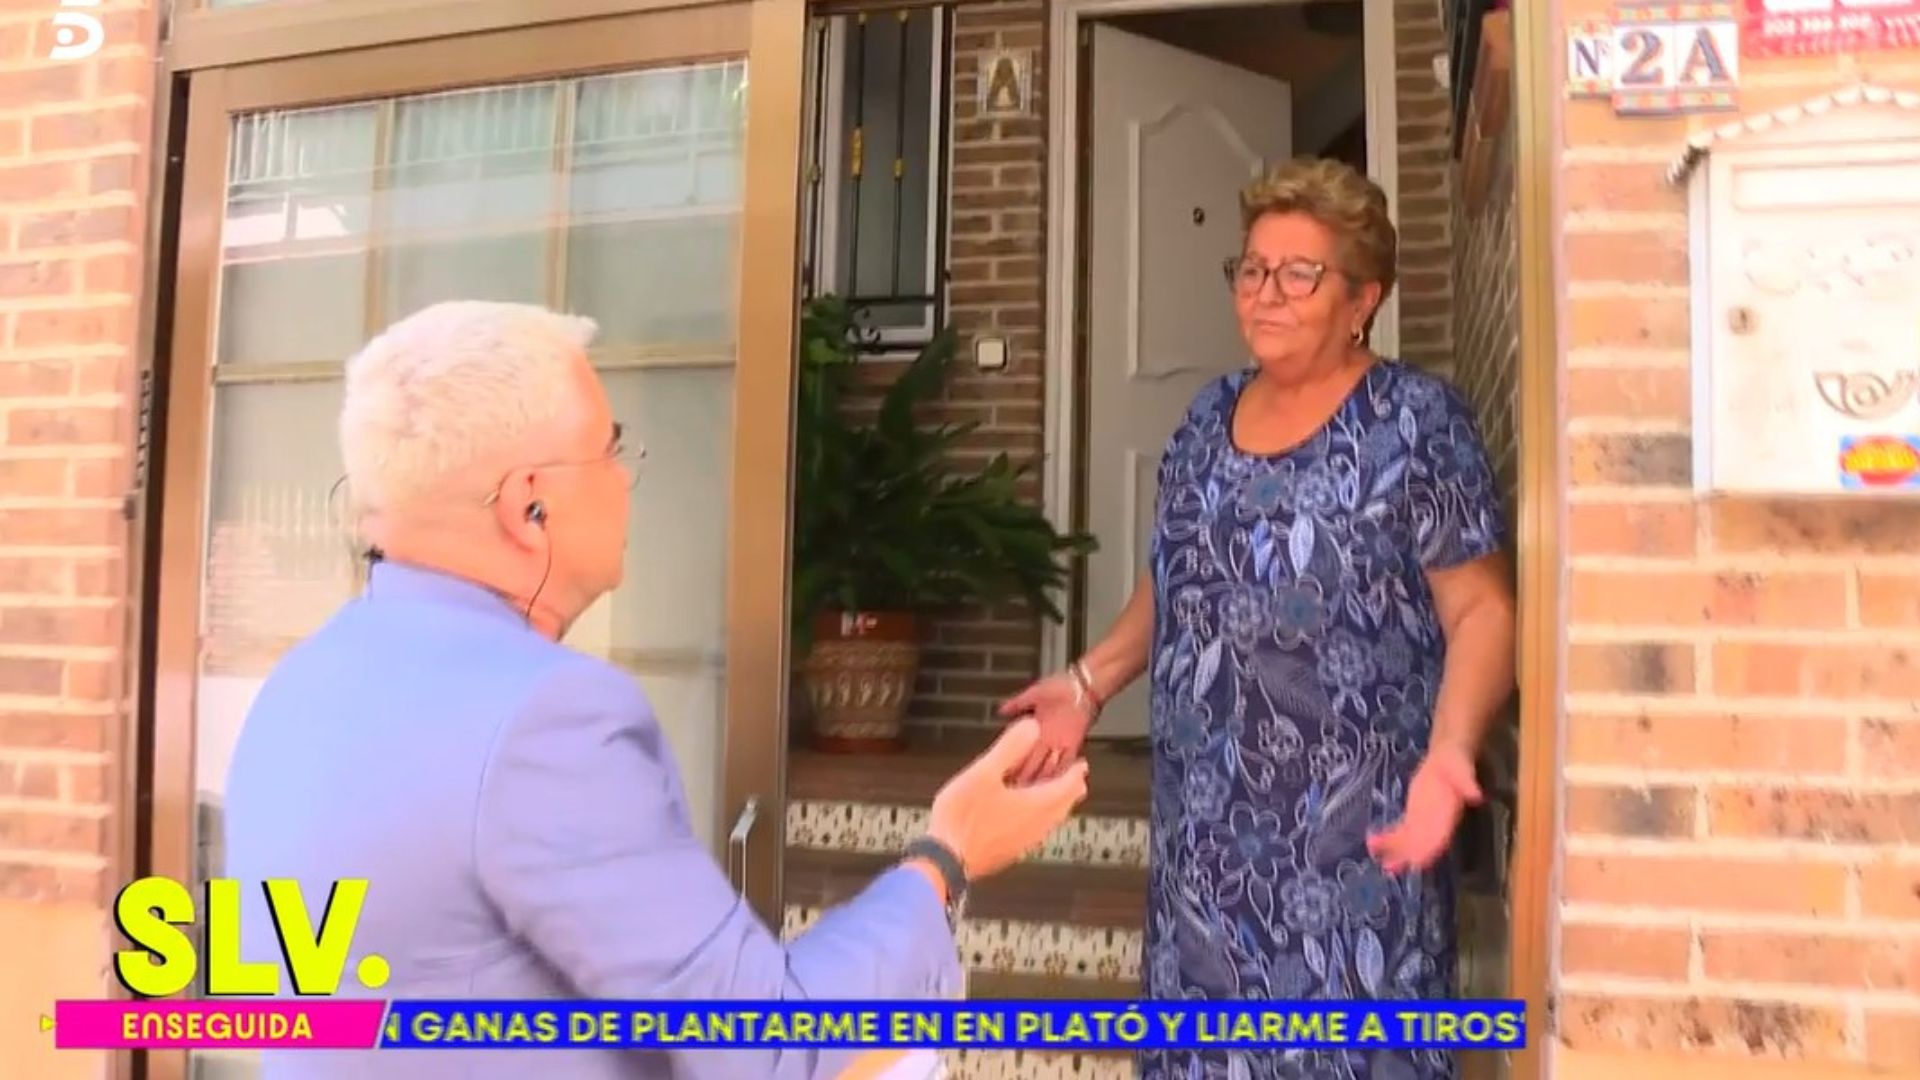 Jorge Javier Vázquez se presenta por sorpresa en casa de Conchi, la hermana de José Ortega Cano